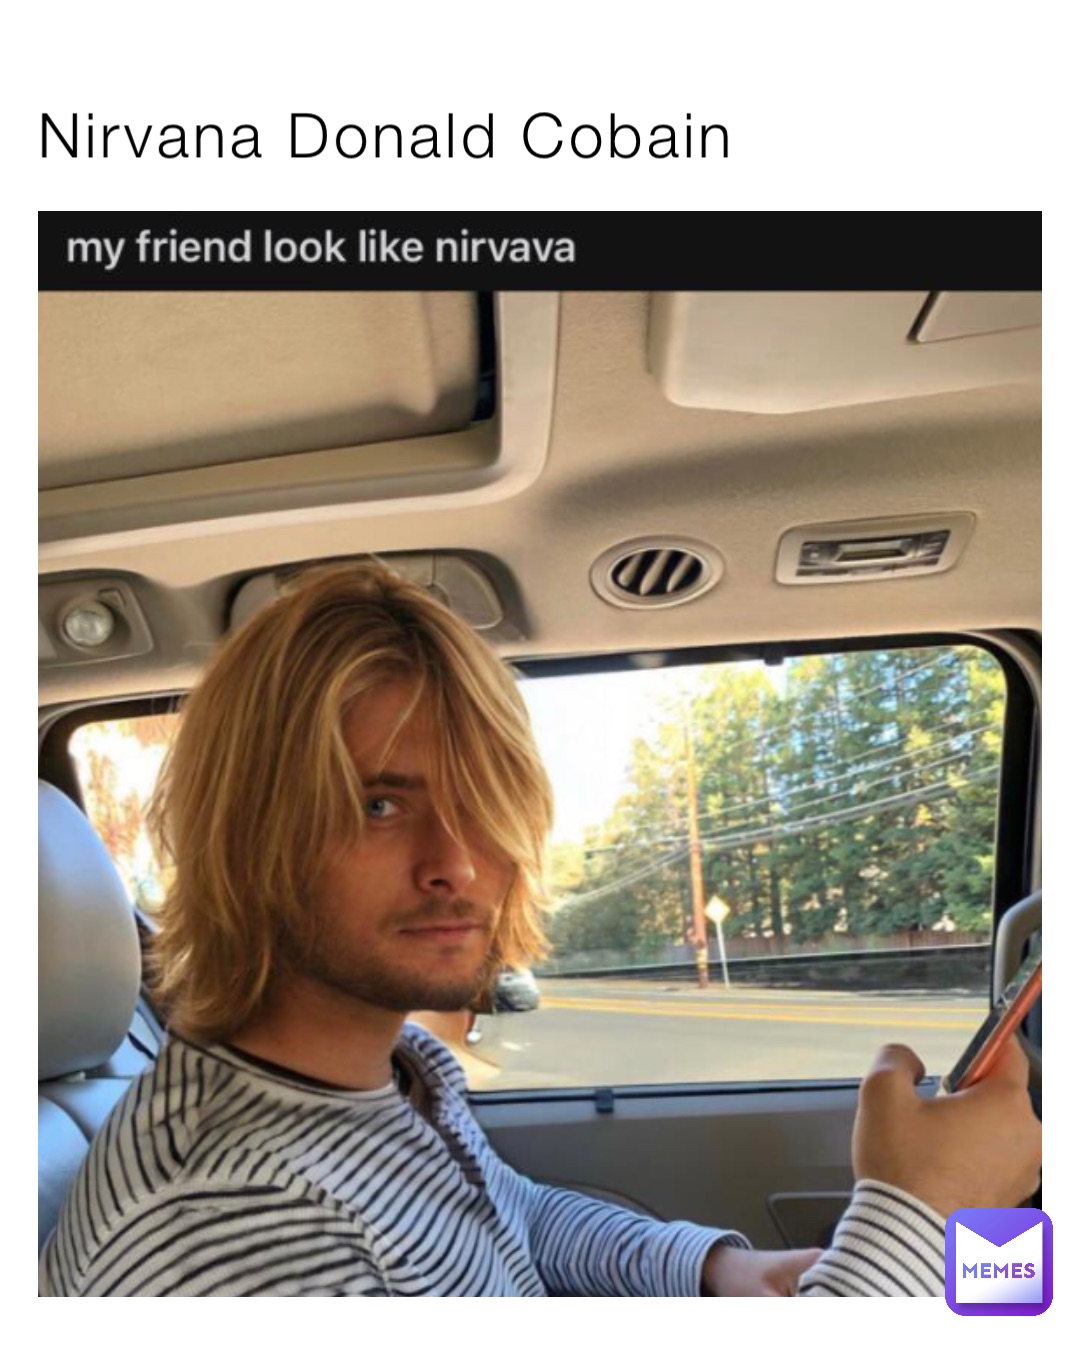 Nirvana Donald Cobain